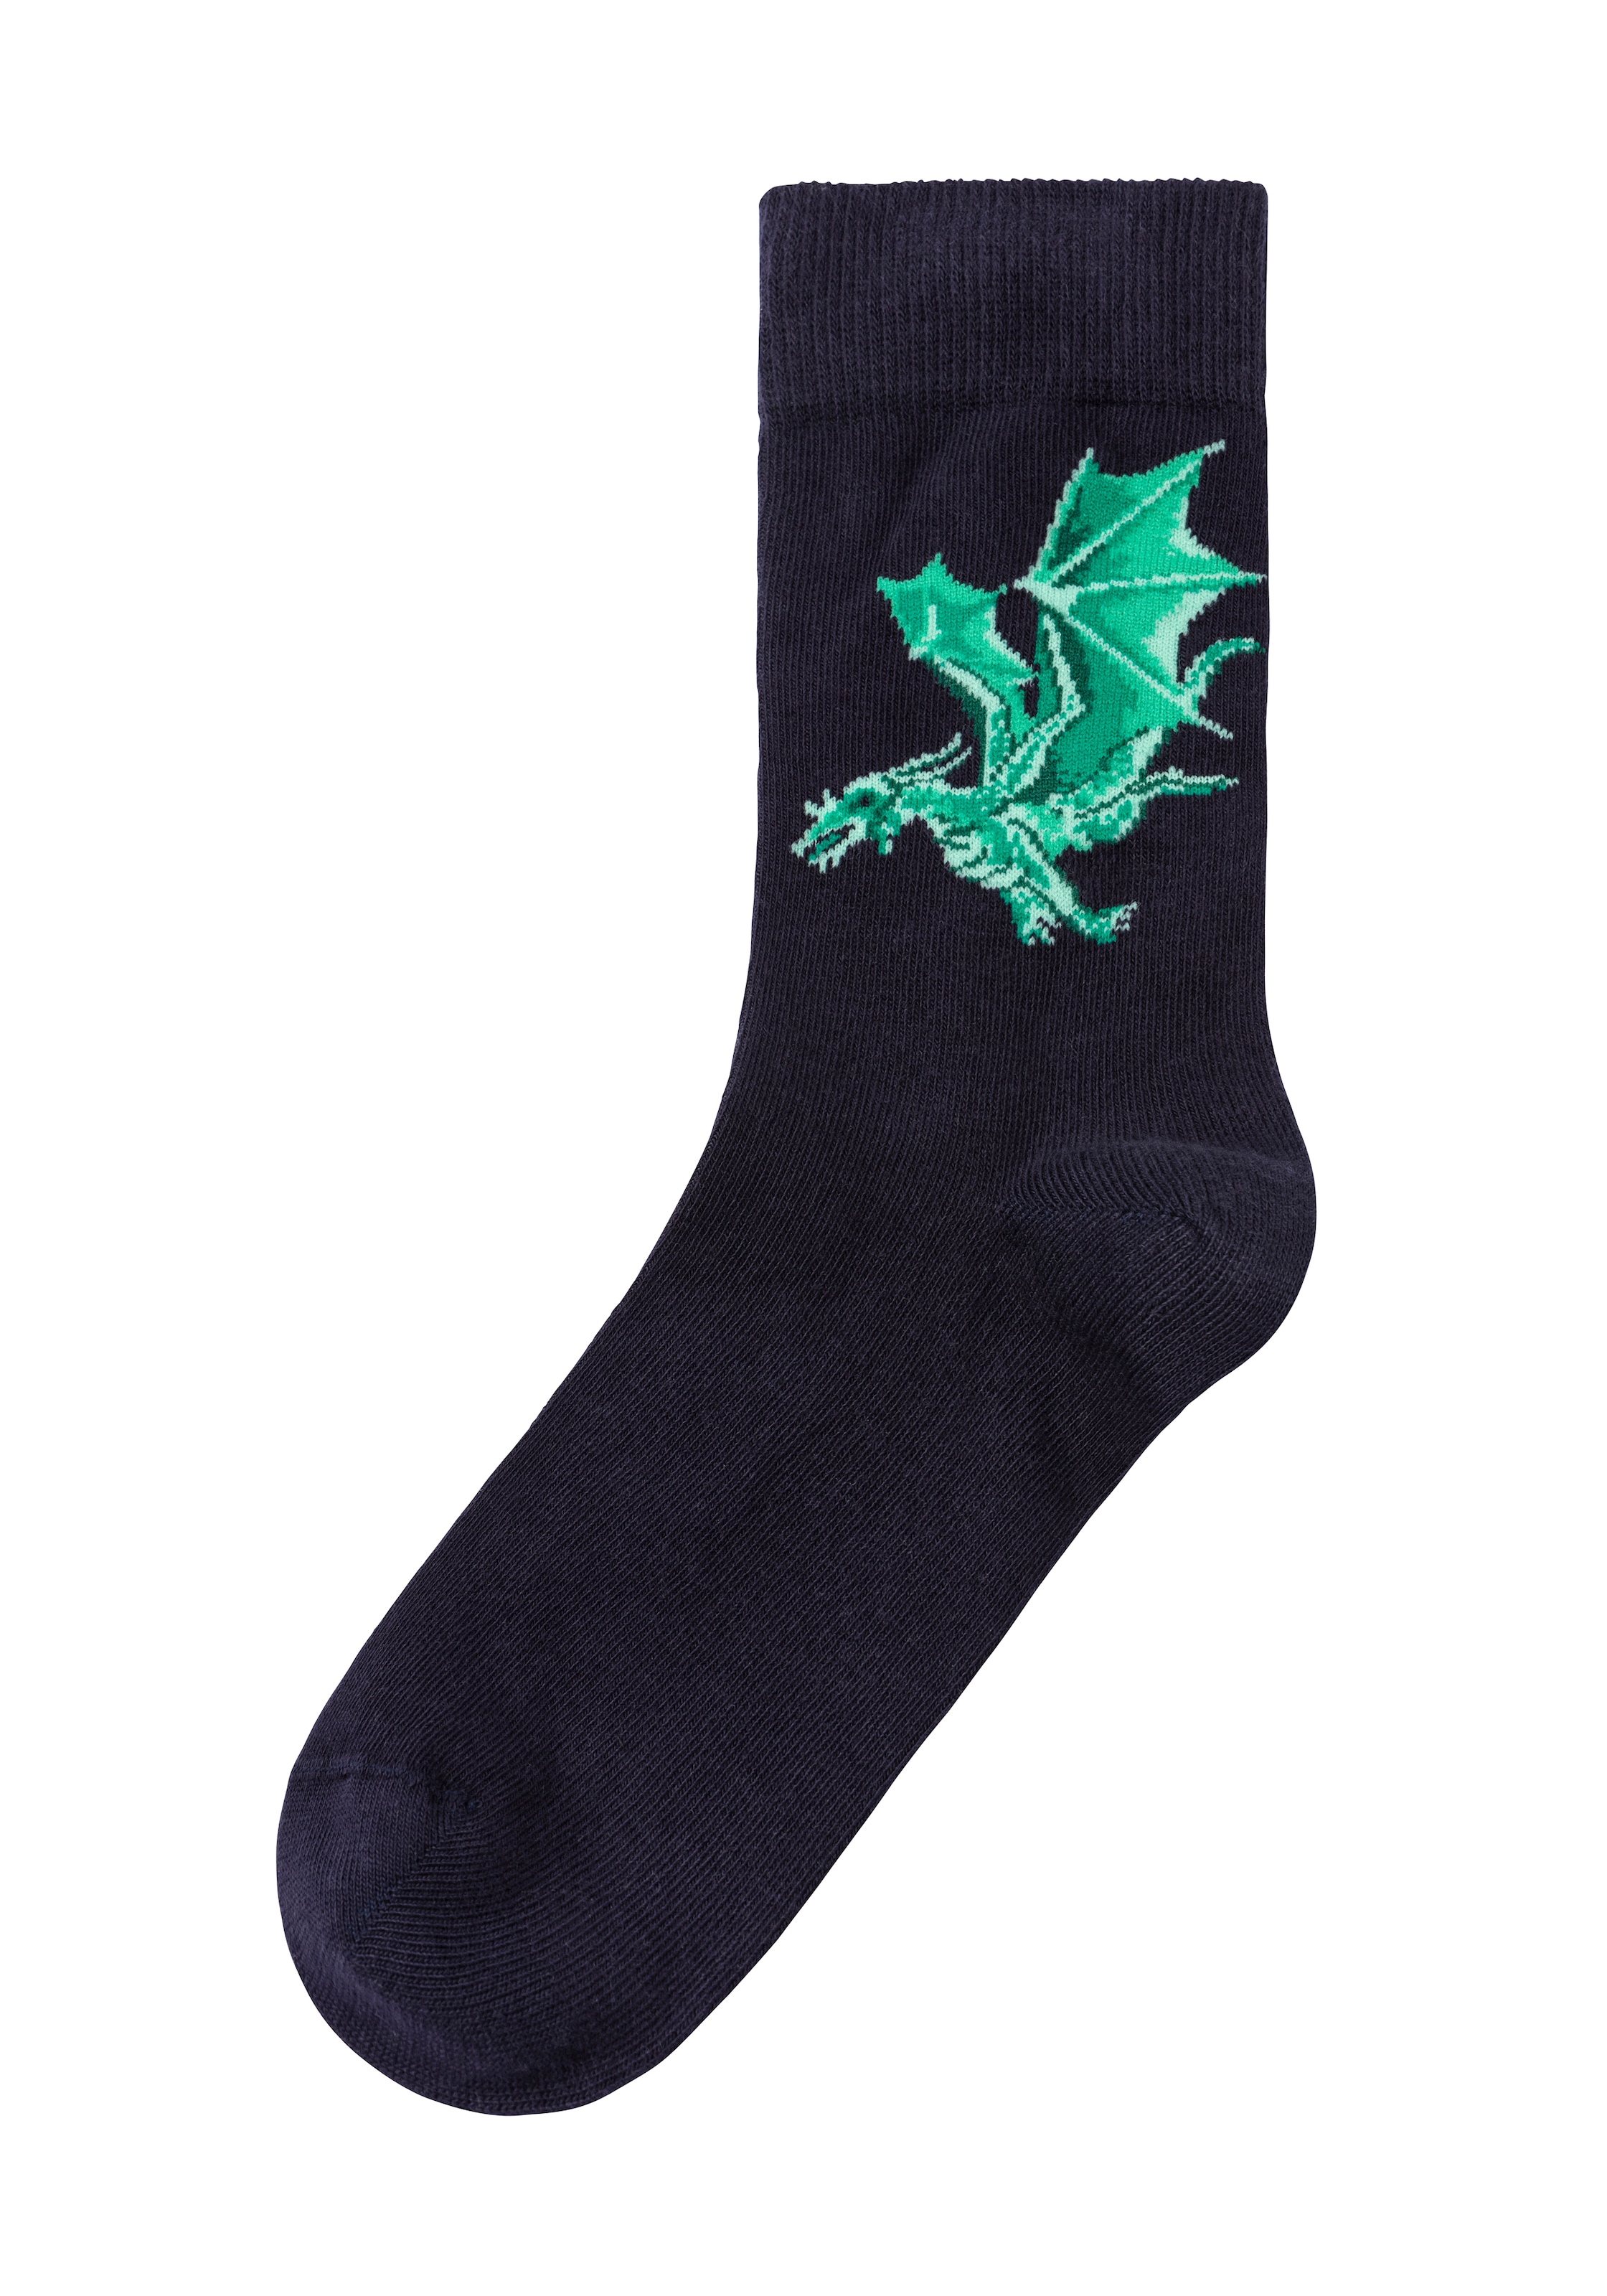 H.I.S Socken, Motiven online mit Drachen Paar), unterschiedlichen bestellen (5